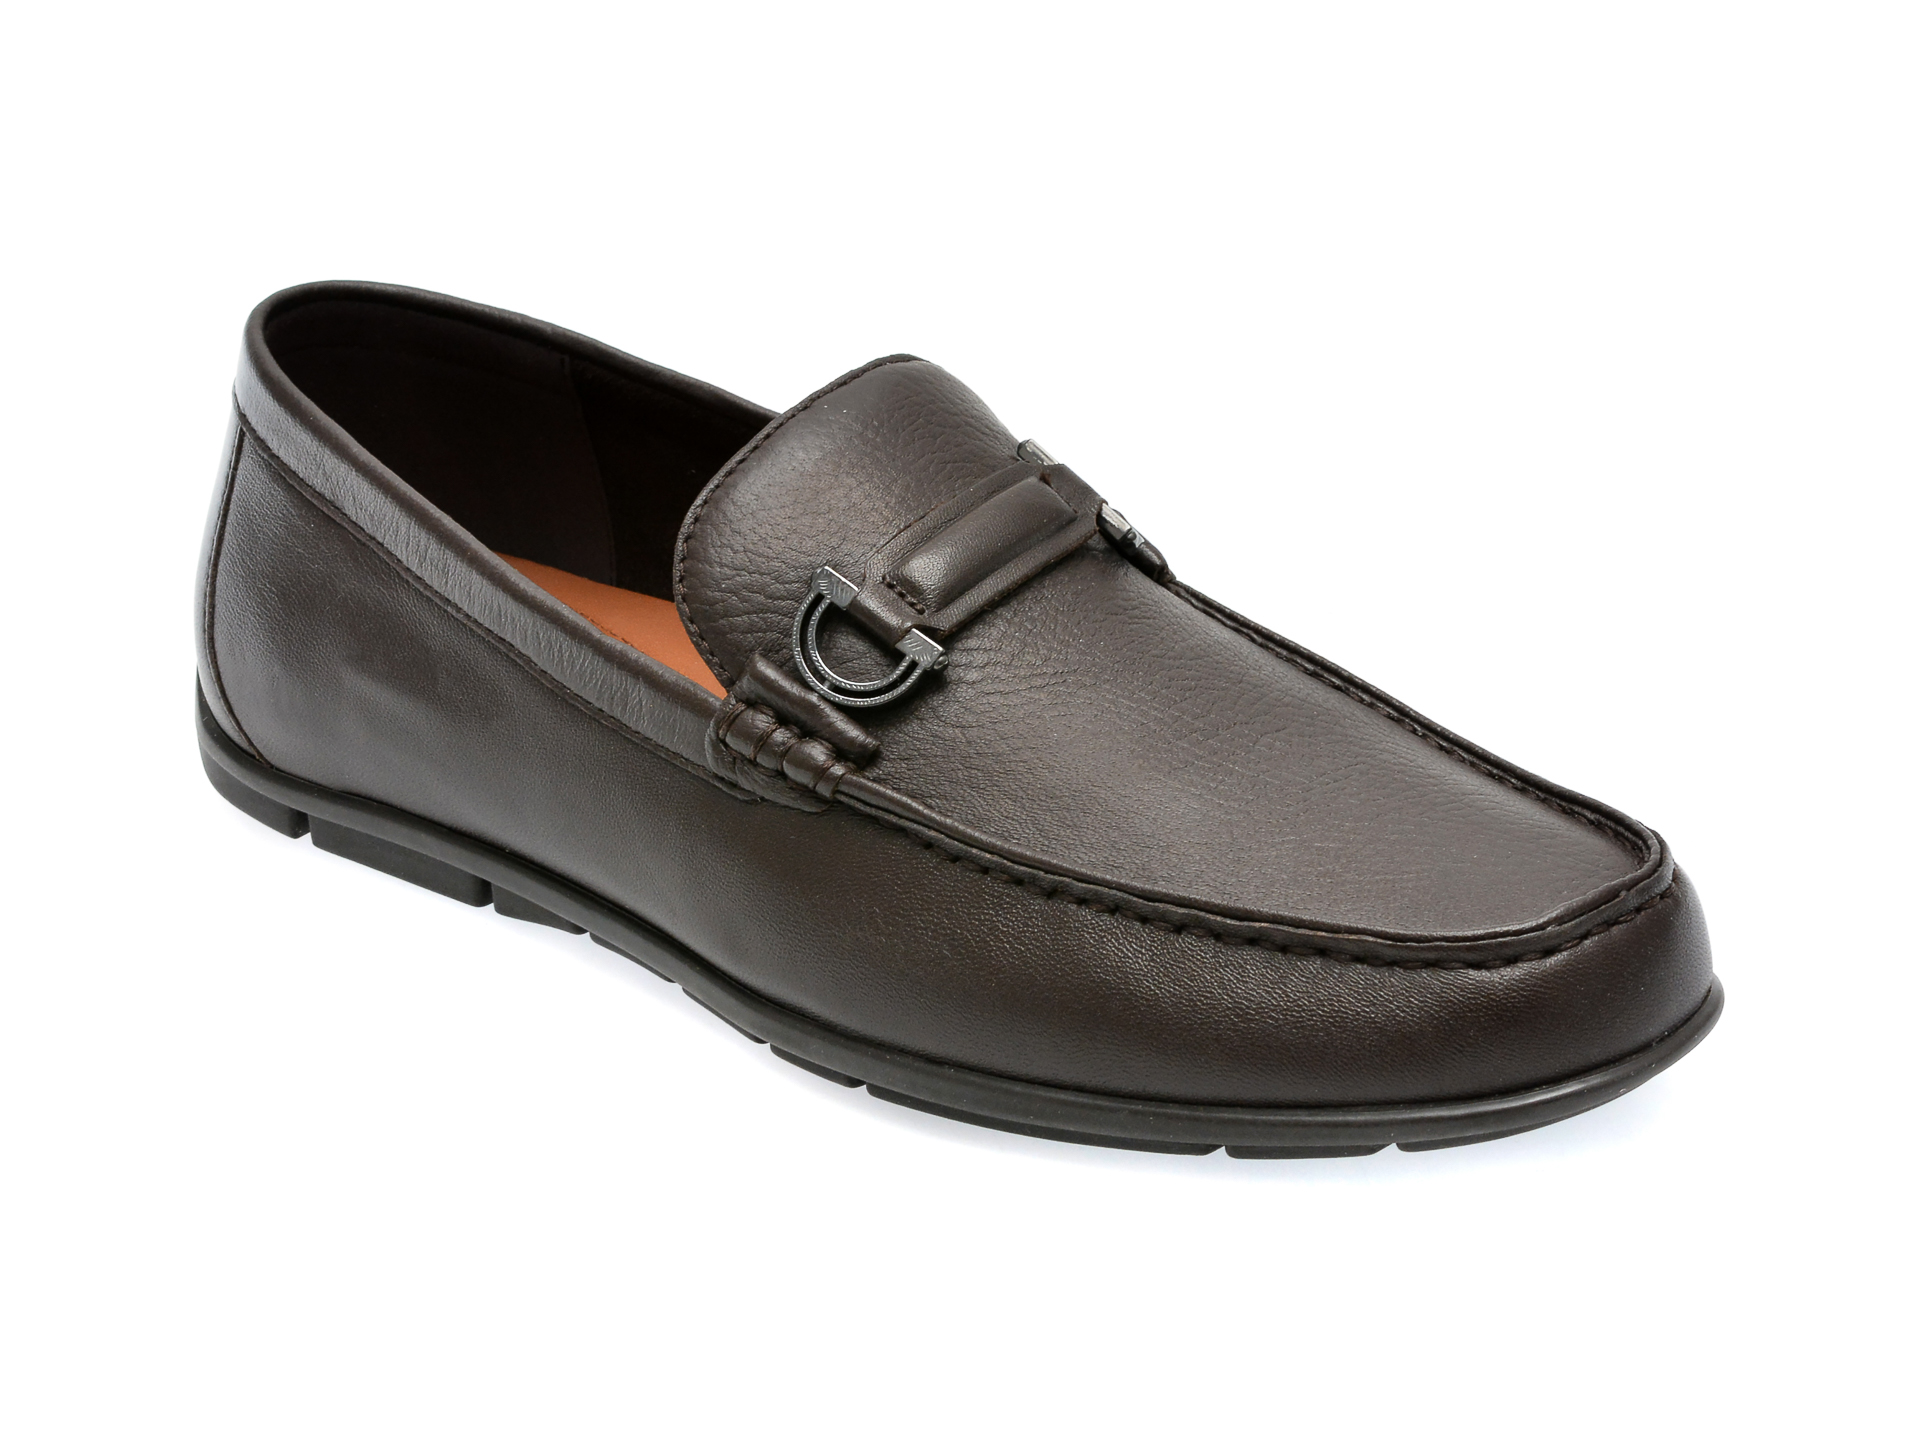 Pantofi ALDO maro, KLAUS201, din piele naturala barbati 2023-09-22